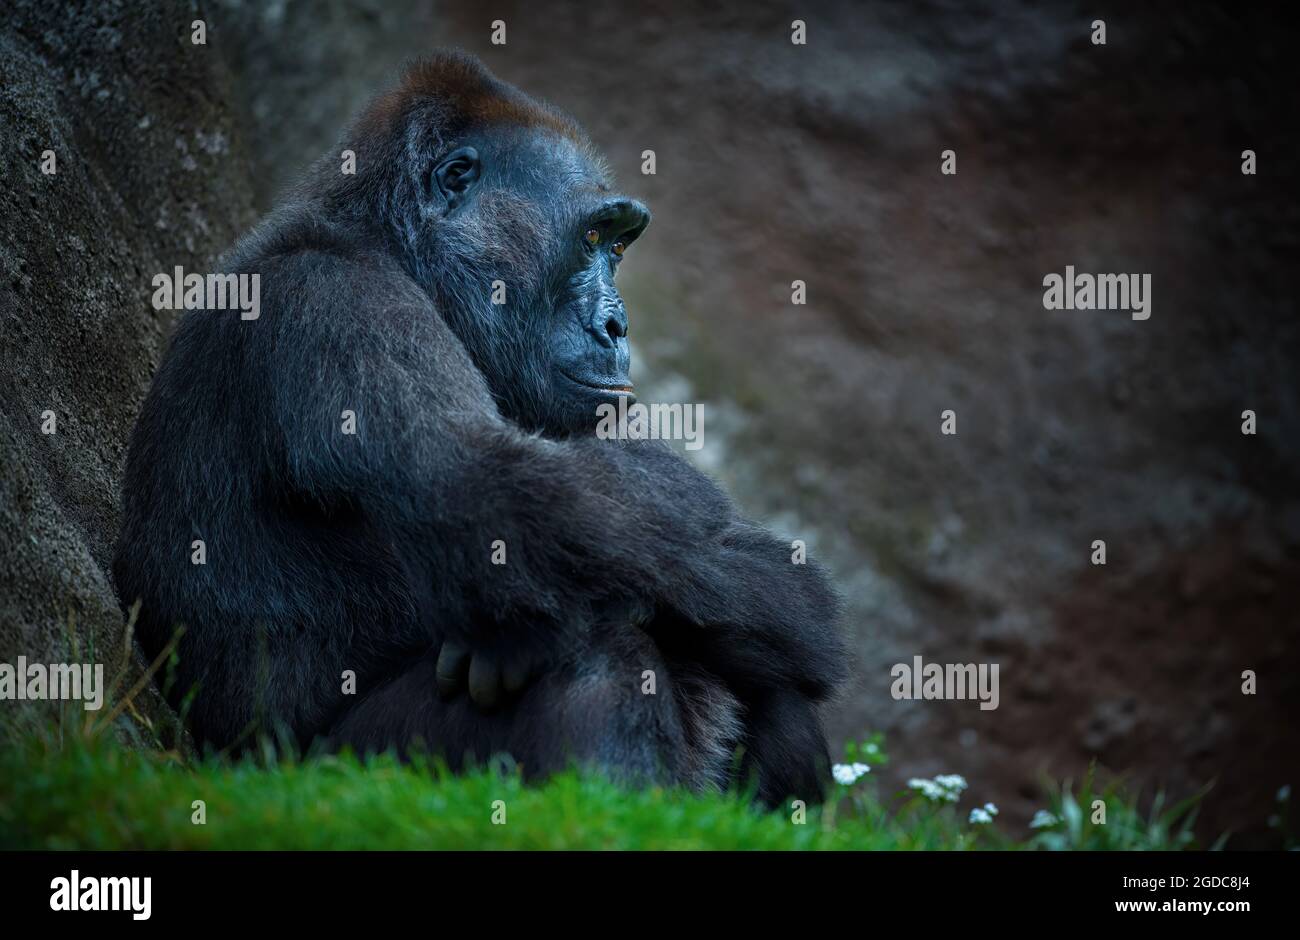 Gorilla si siede felicemente sull'erba e pensa, la migliore foto. Foto Stock